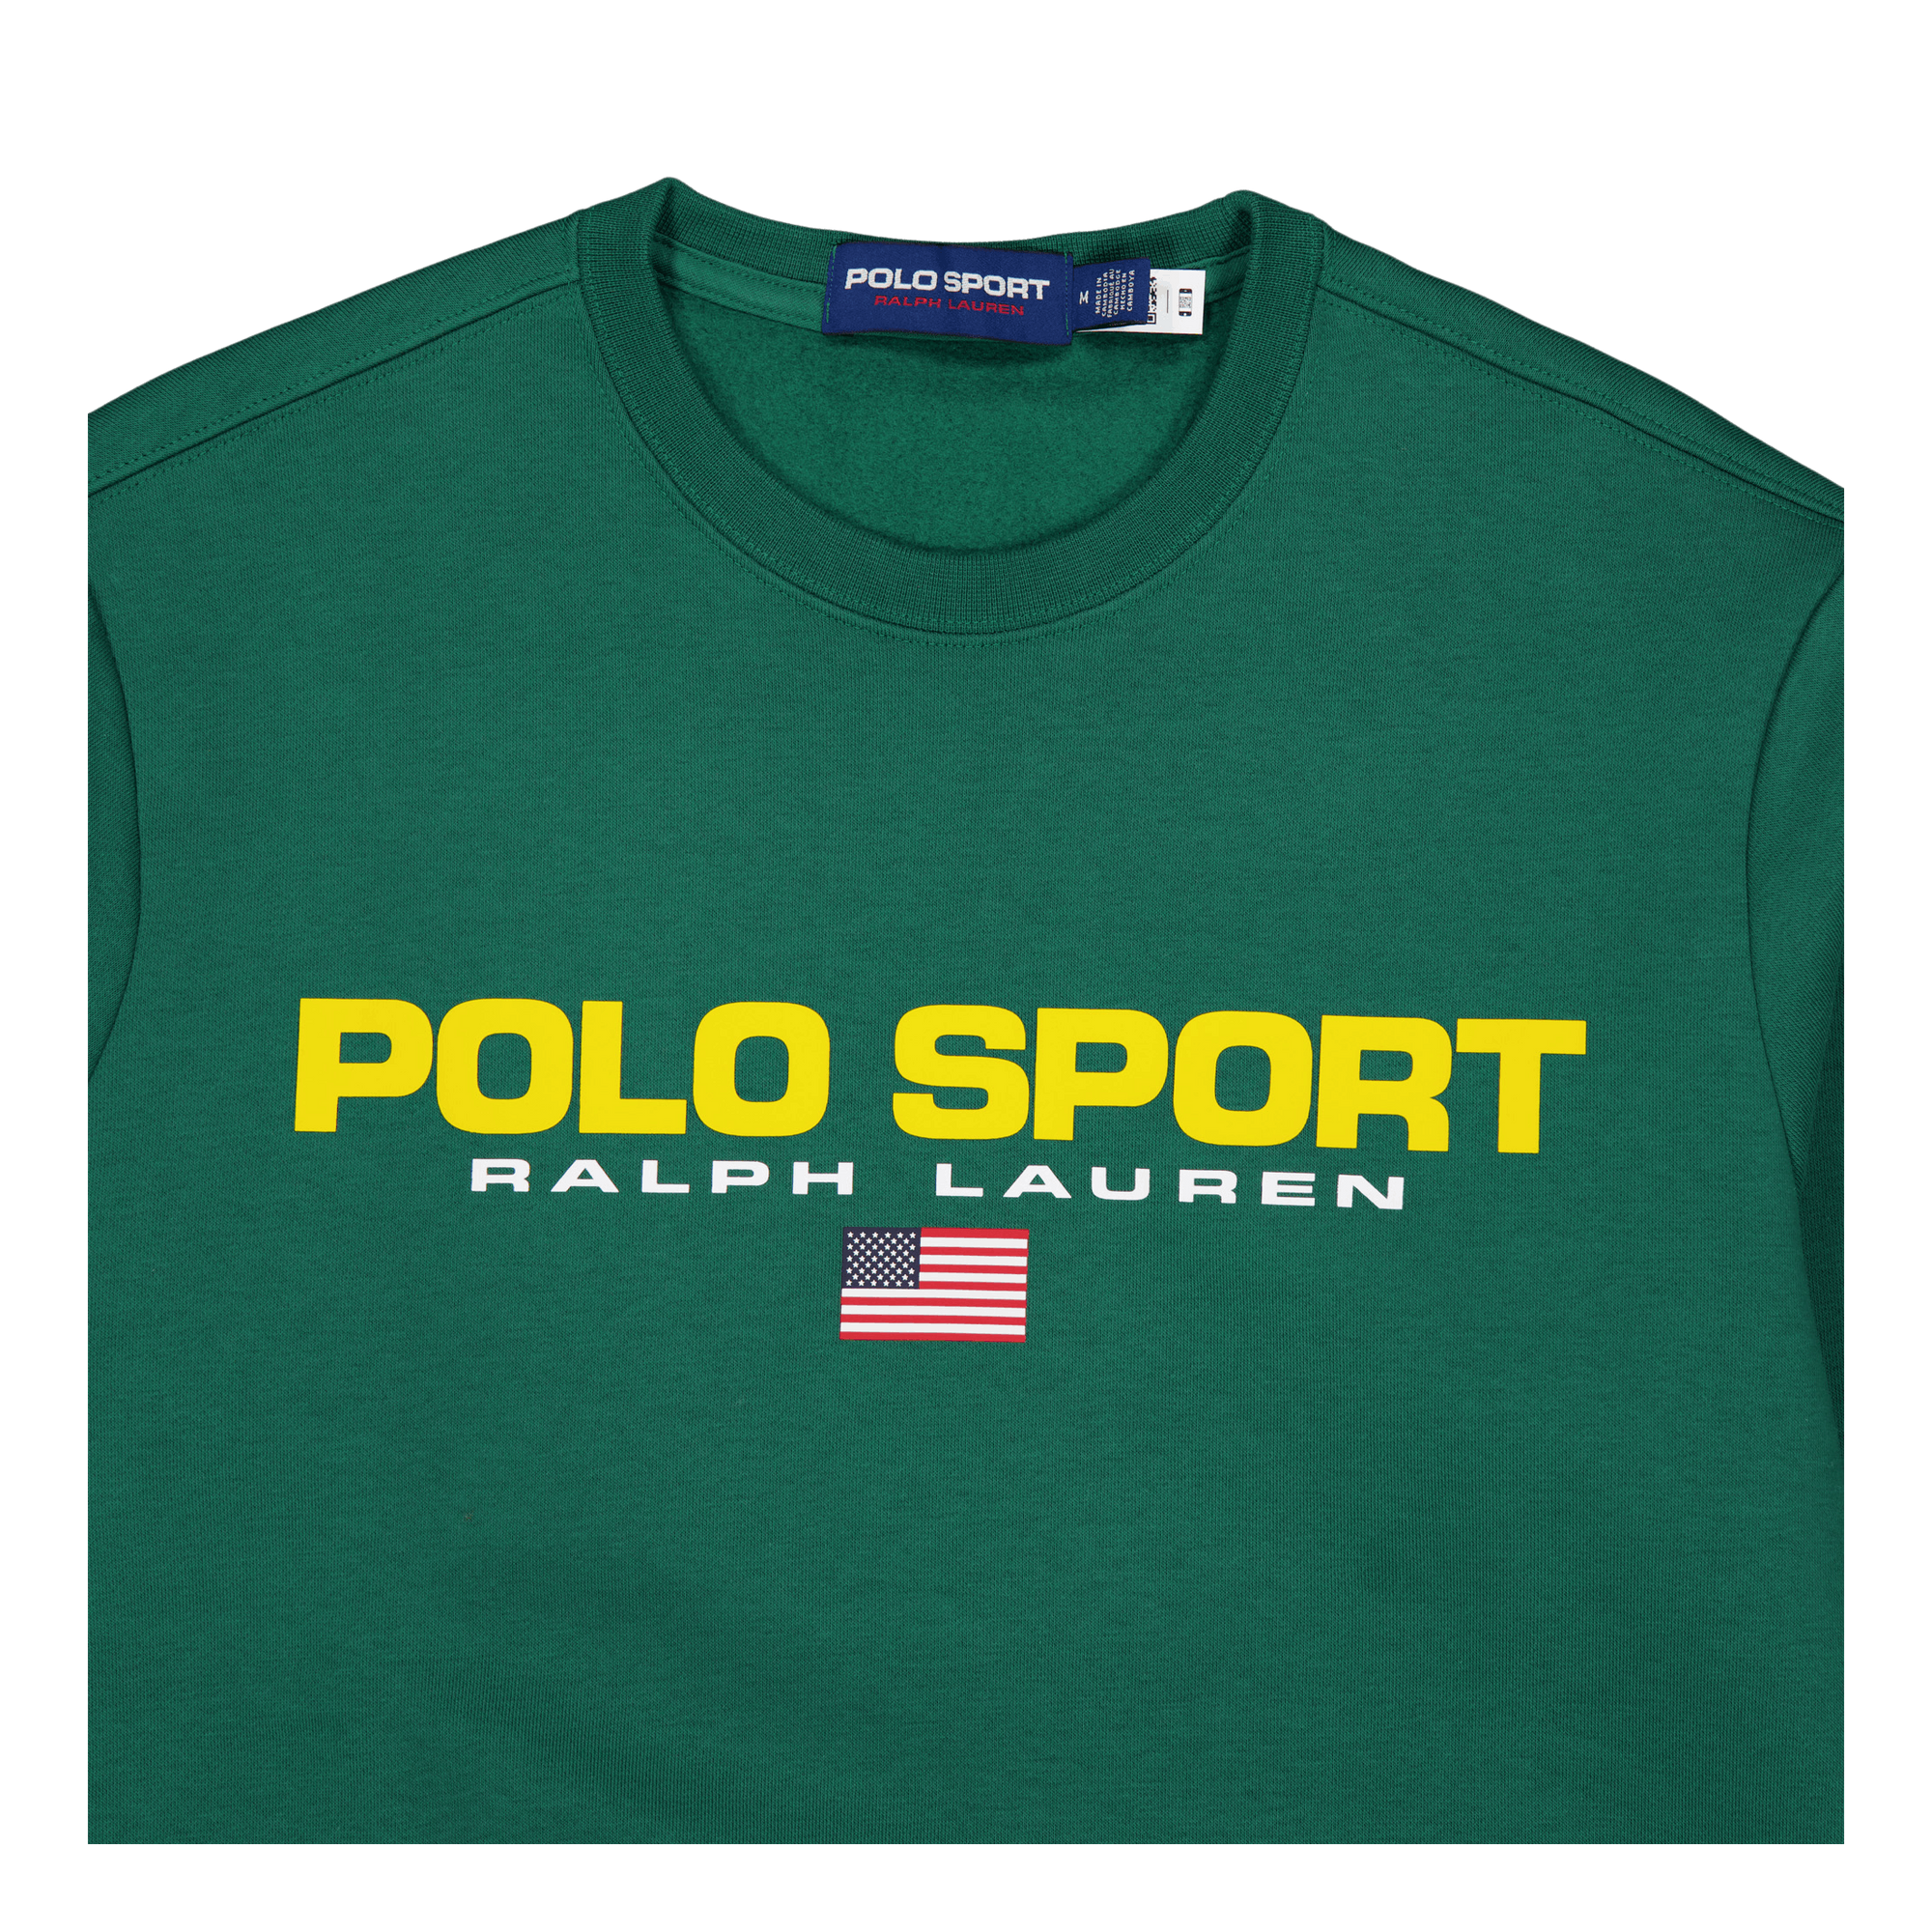 Polo Sport Fleece Sweatshirt Kelly Green